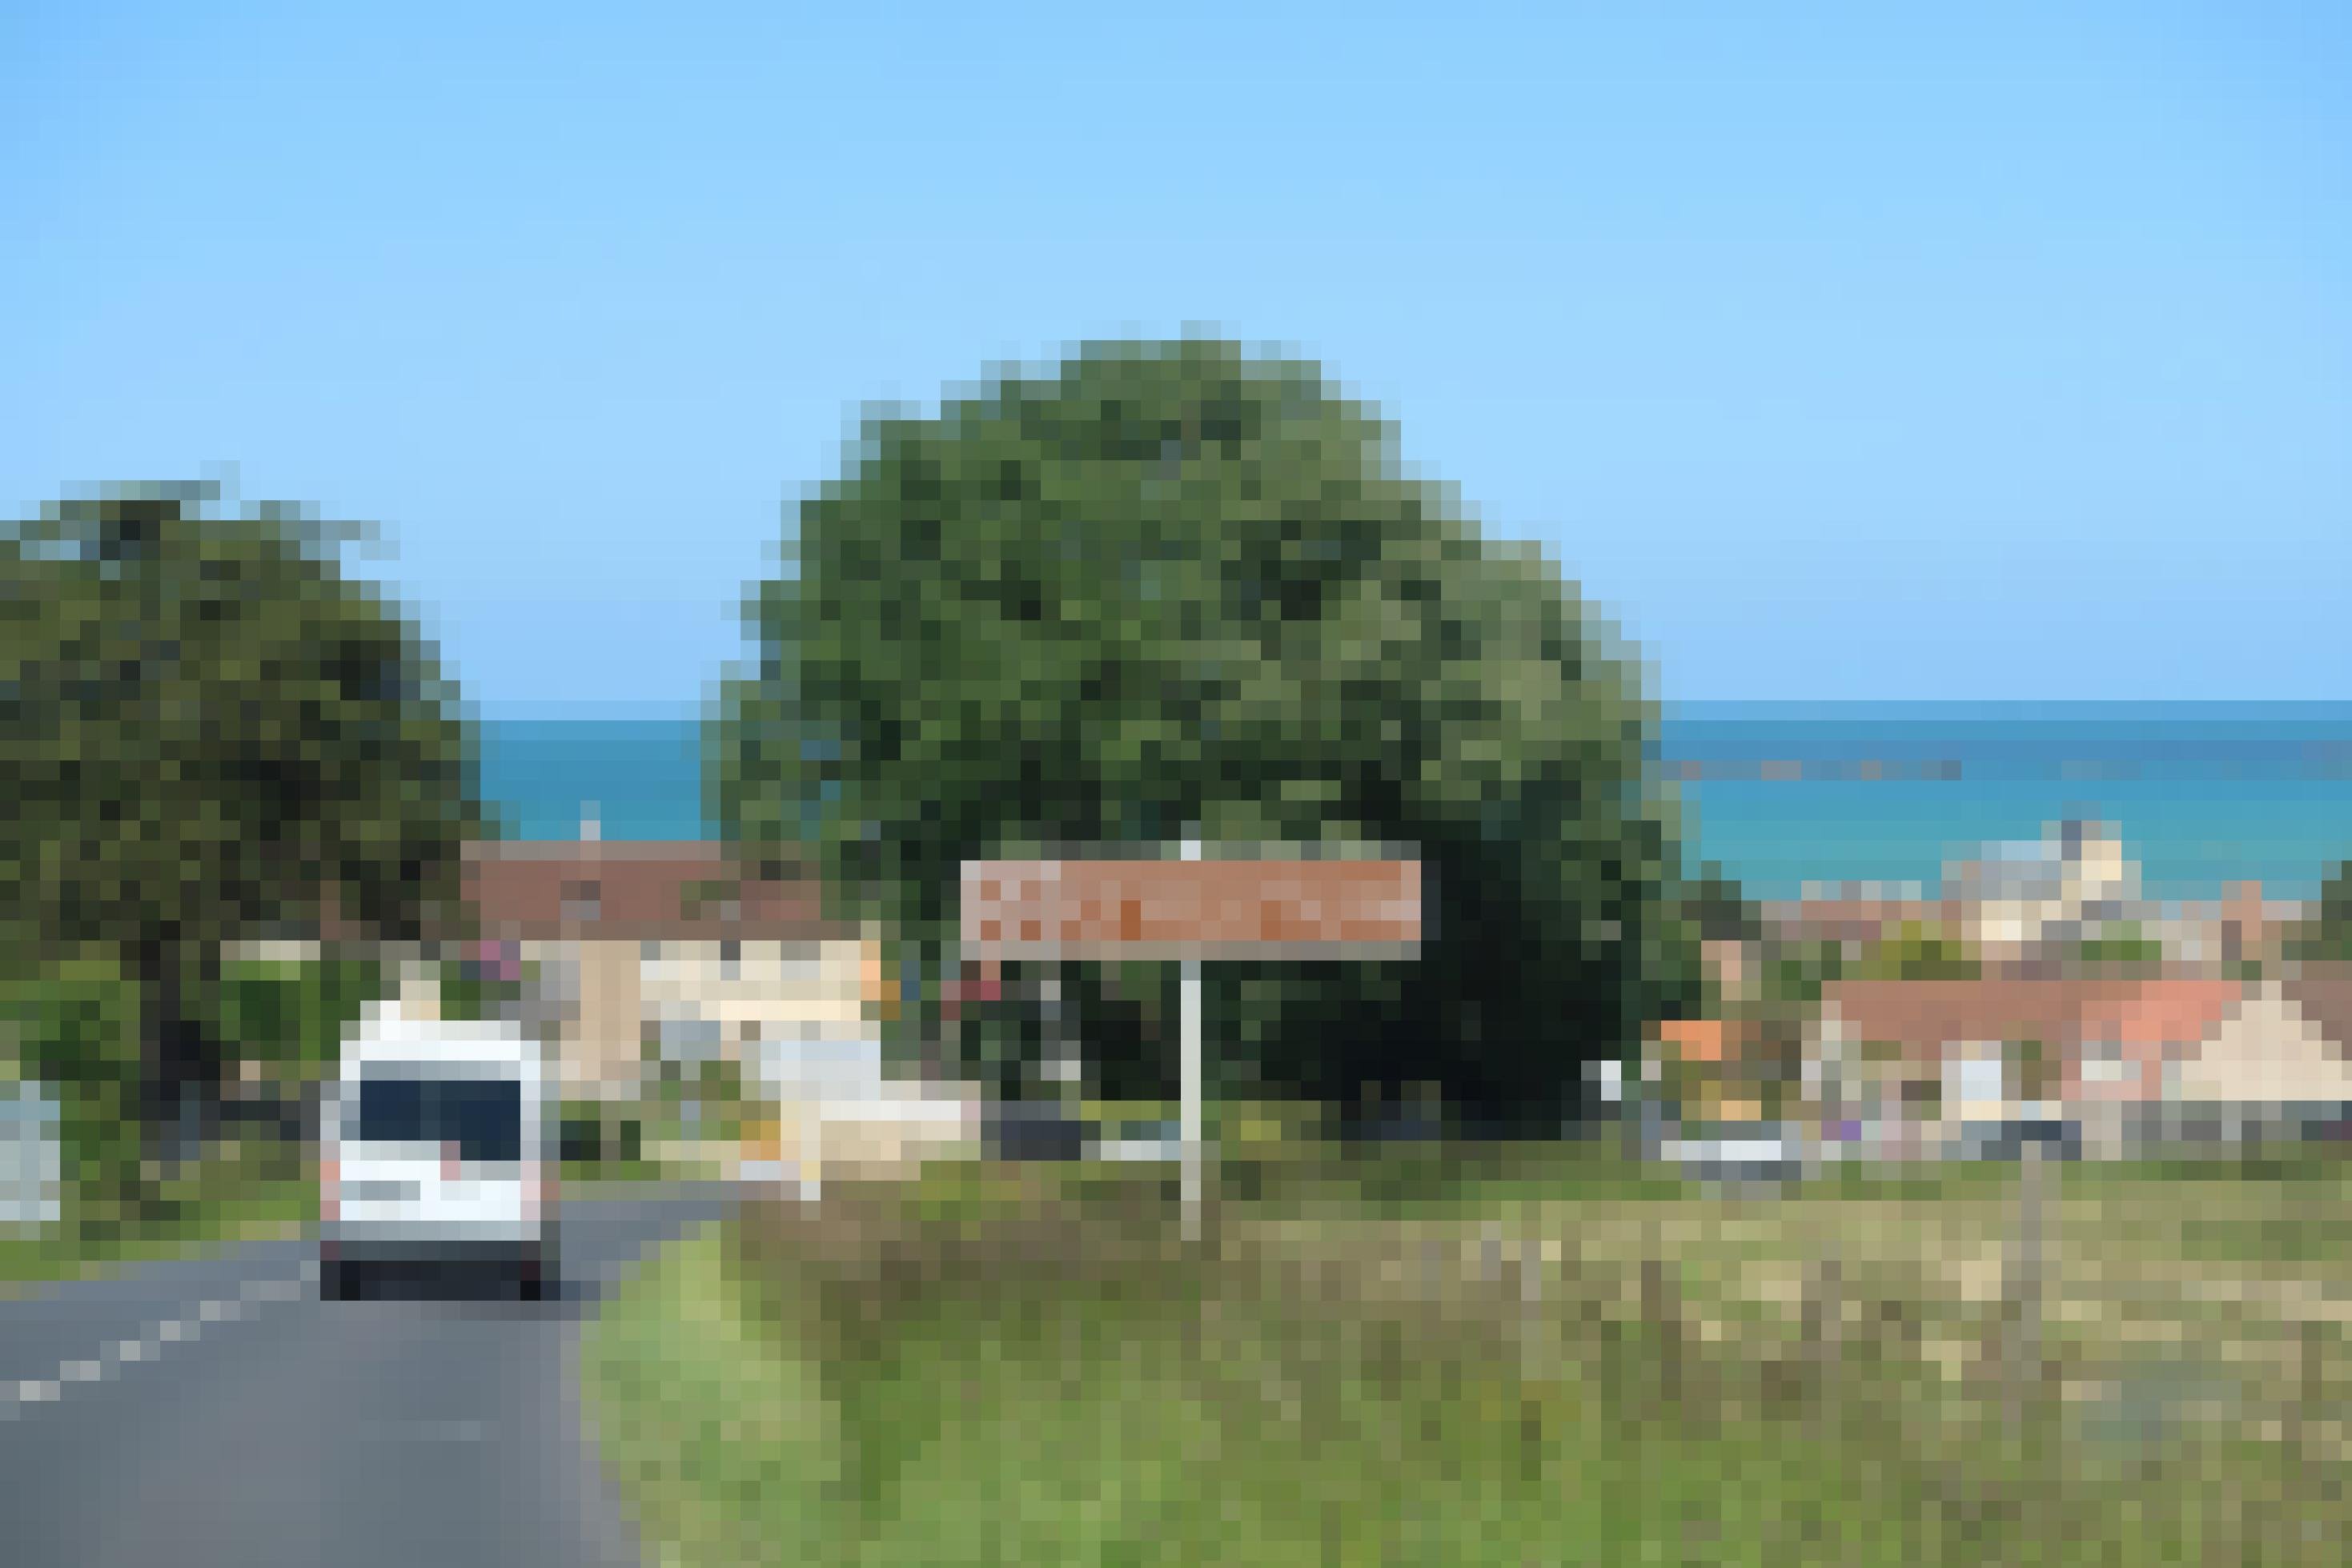 Ortseinfahrt in ein Dorf in der Normandie, im Hintergrund ist das Meer zu sehen